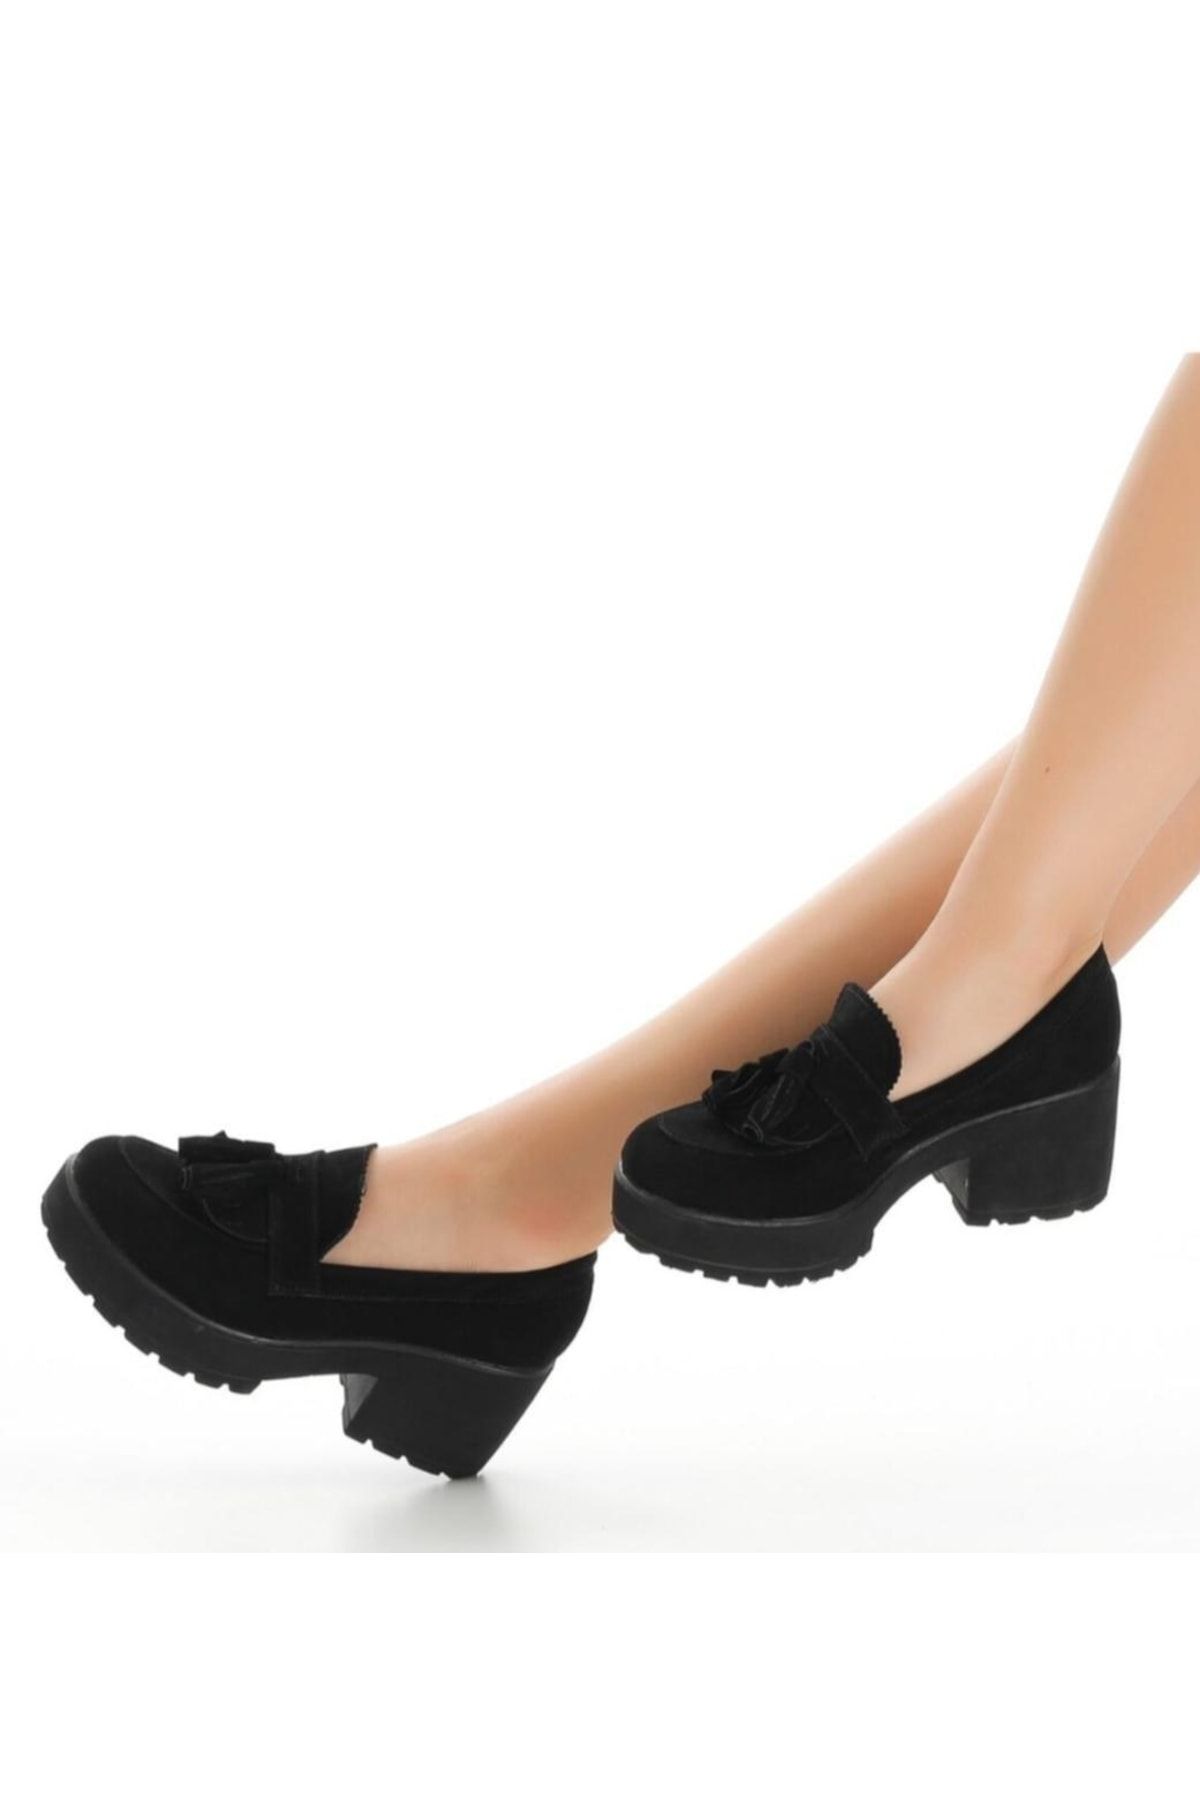 çetin ayakkabı Kadın Günlük Topuklu Püsküllü Kalın Taban Siyah Süet Ayakkabı